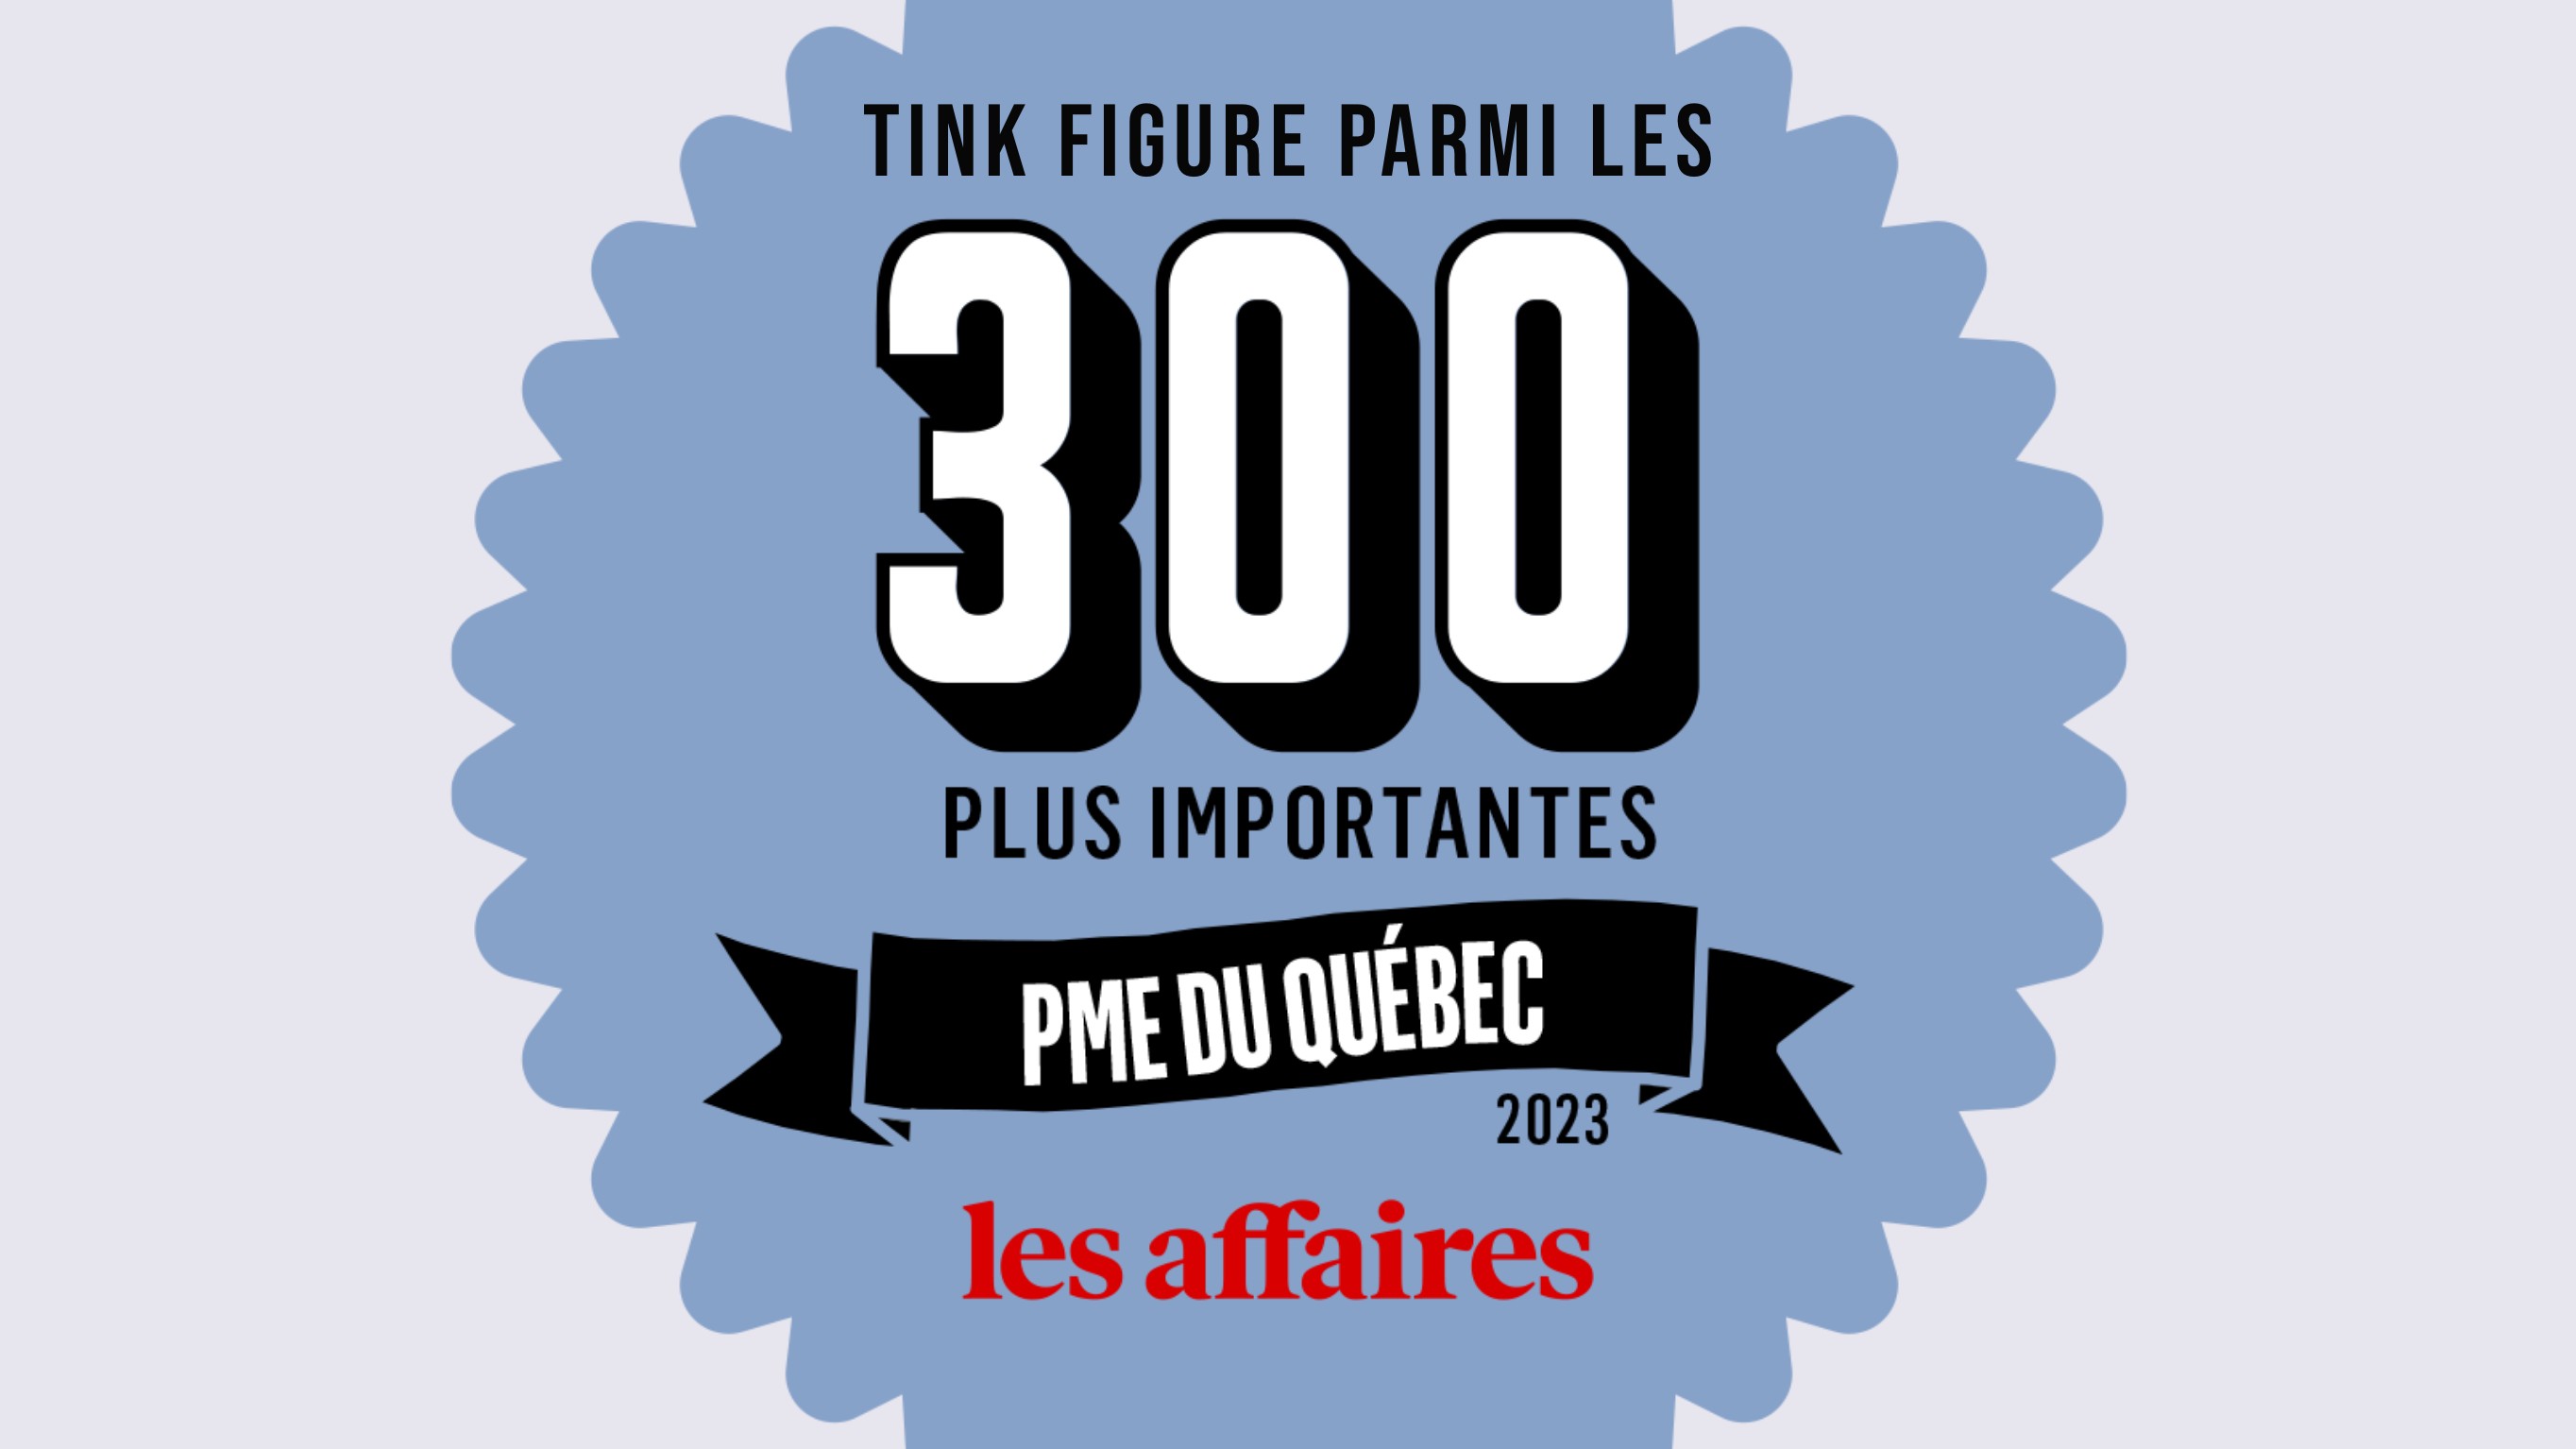 TINK - Nouvelle 300 plus importantes PME du Québec